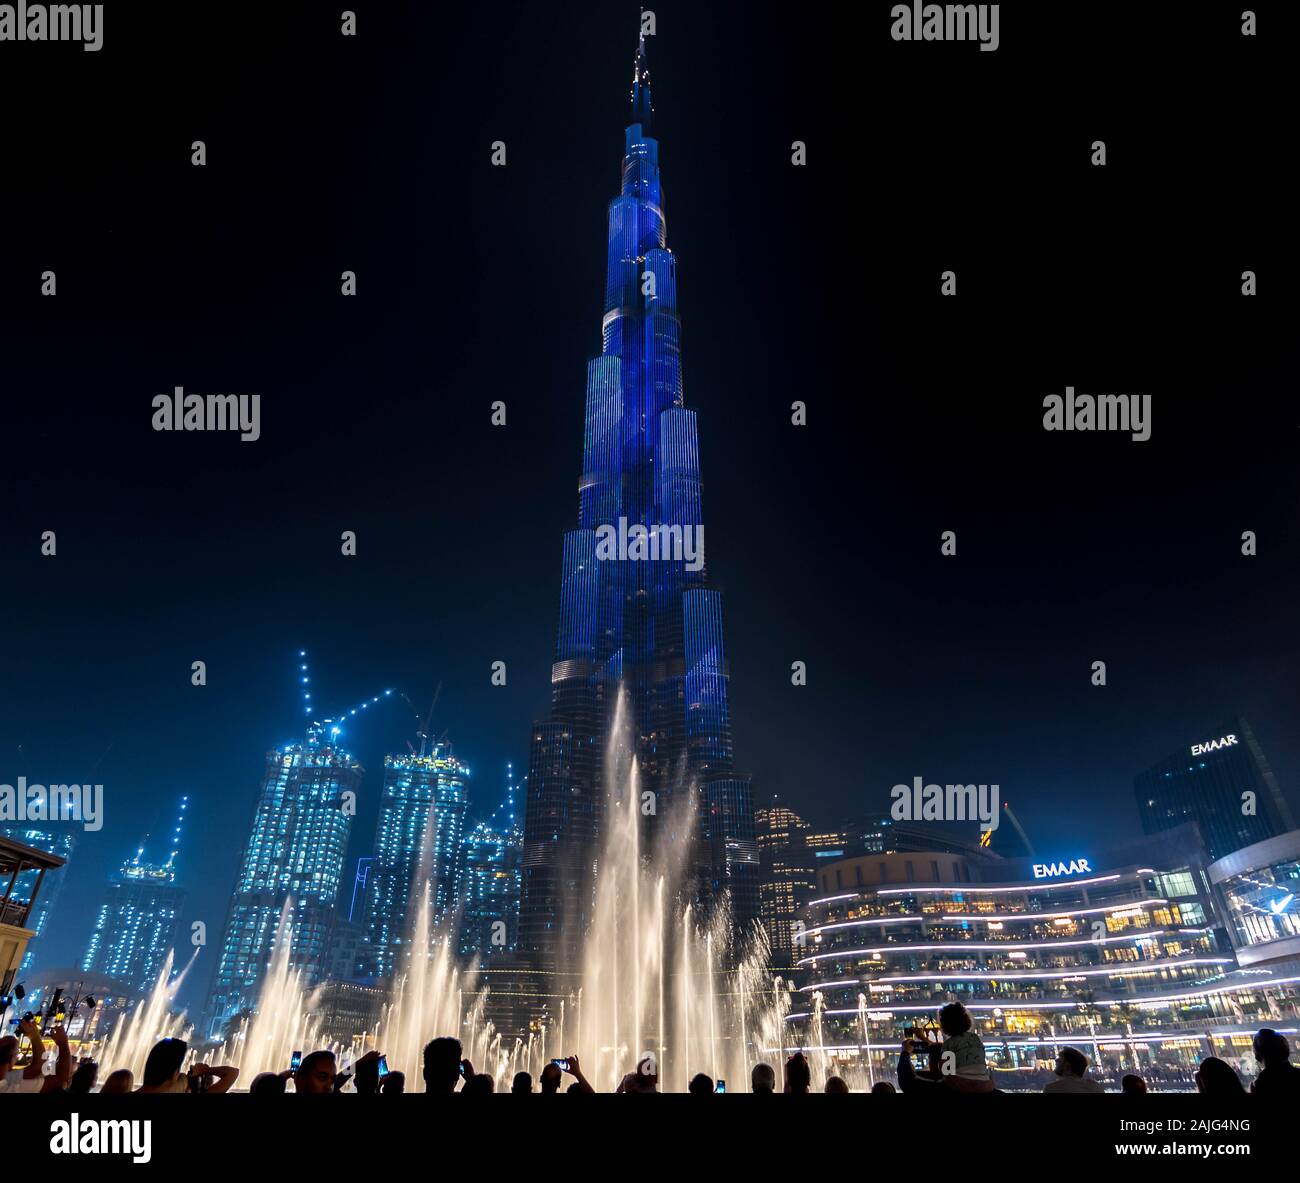 Dubai, Emiratos Árabes Unidos y fuentes de luz: impresionante show en el Burj Khalifa, el edificio más alto rascacielos en el mundo, iluminada por la noche Foto de stock